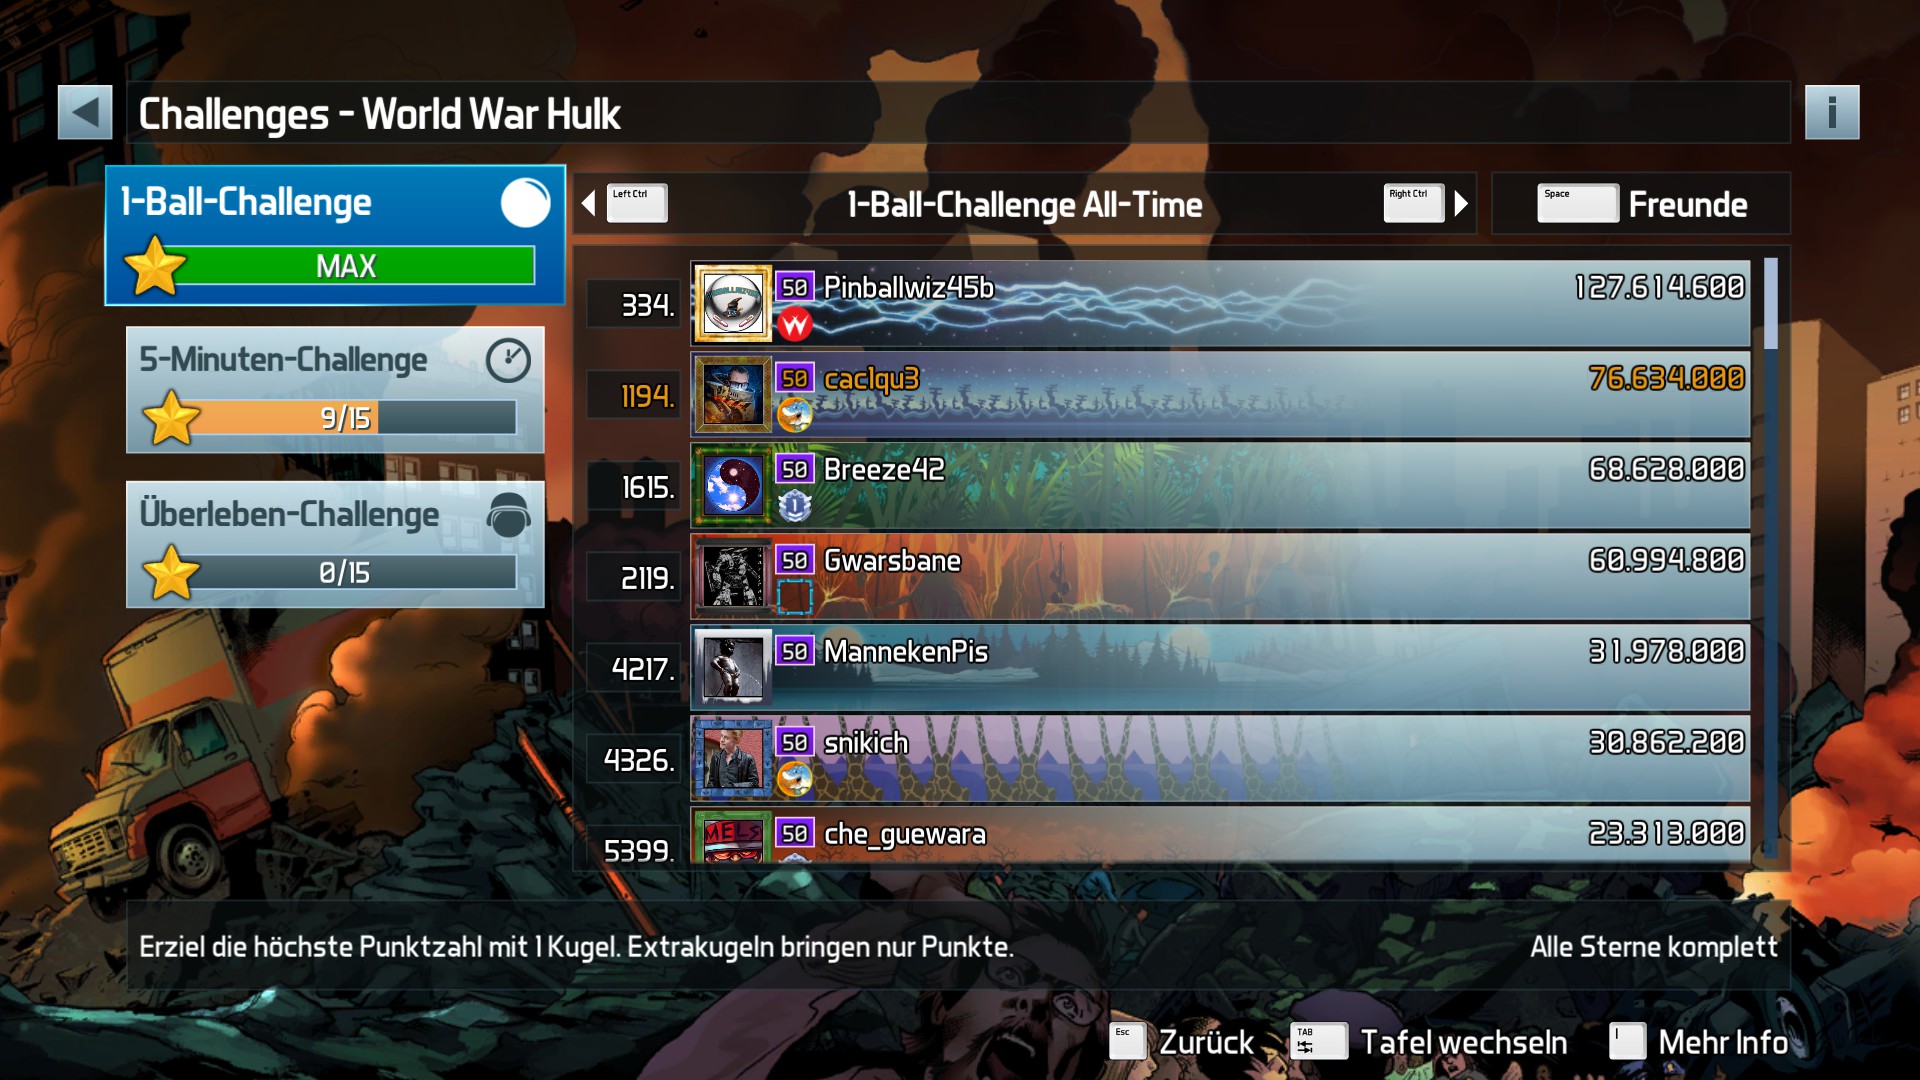 e2e4: Pinball FX3: World War Hulk [1 Ball] (PC) 76,634,000 points on 2022-06-15 18:55:41